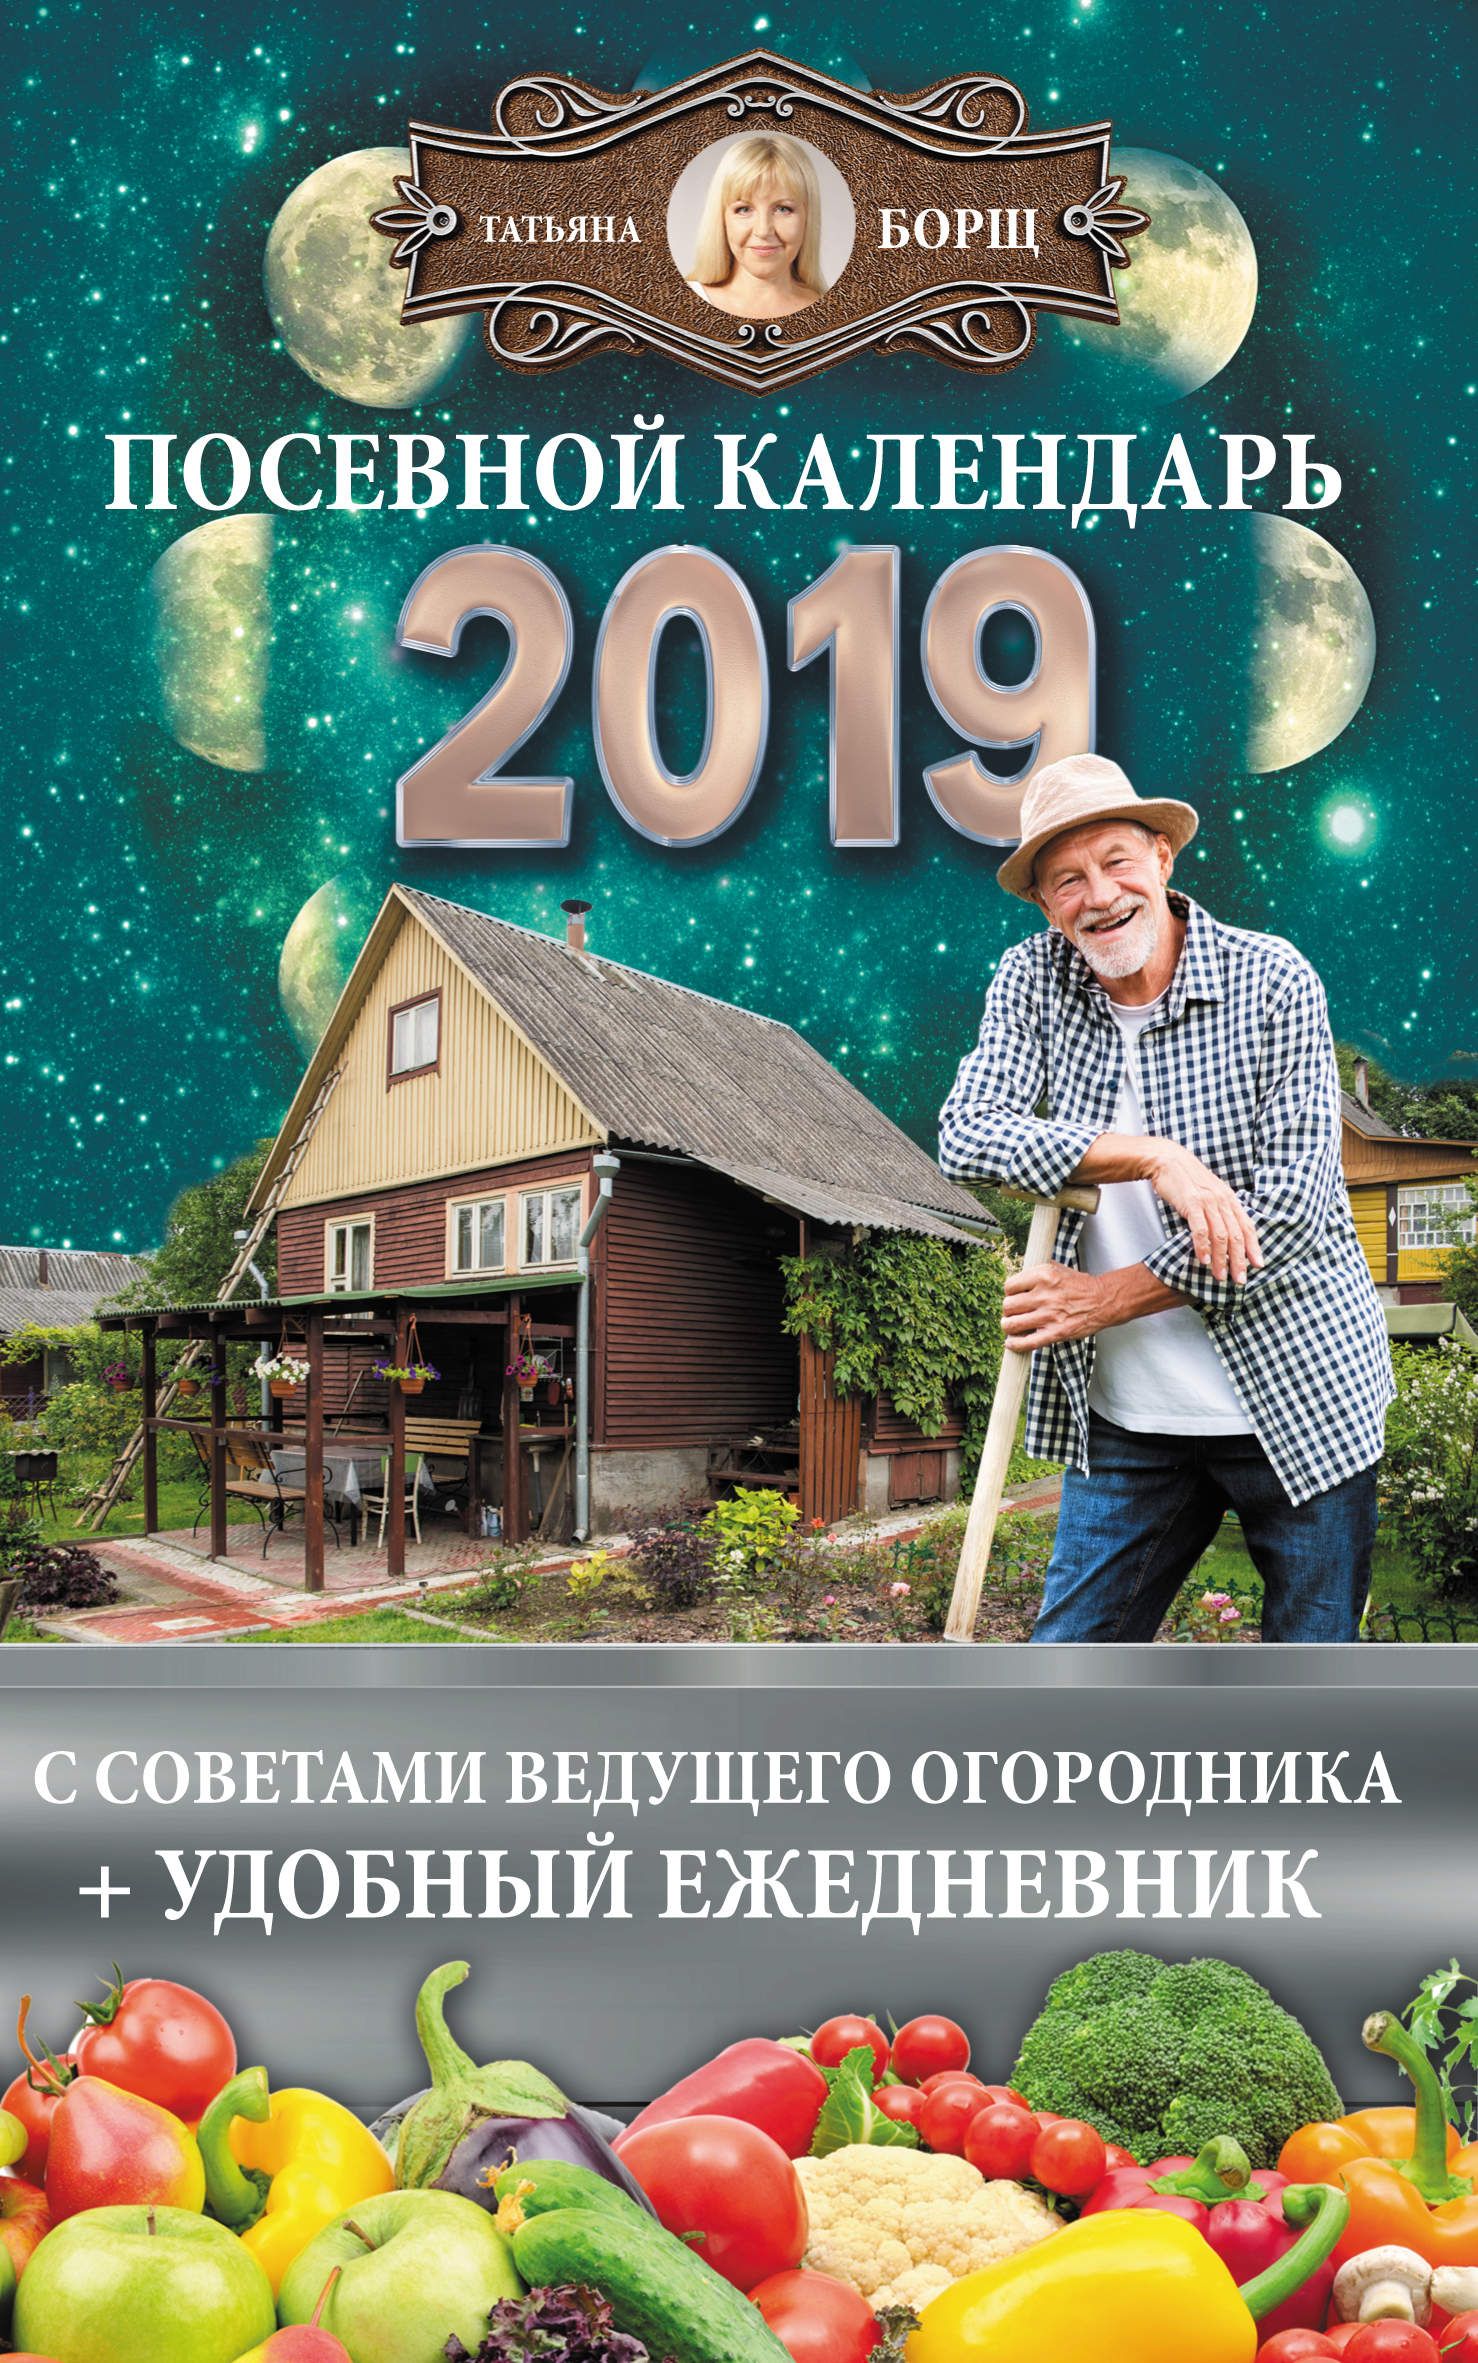 Посевной календарь на 2019 год с советами ведущего огородника + удобный ежедневник